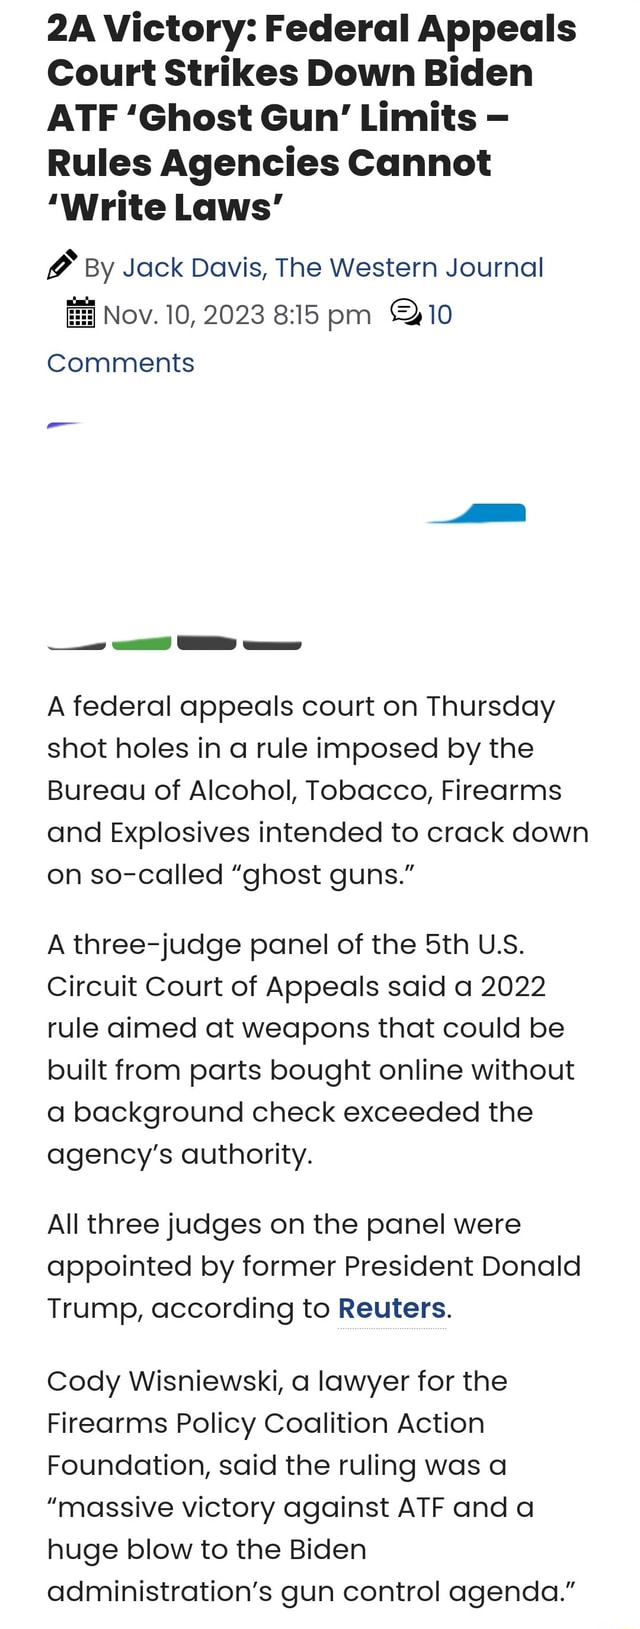 Victory: Federal Appeals Court Strikes Down Biden ATF 'Ghost Gun ...